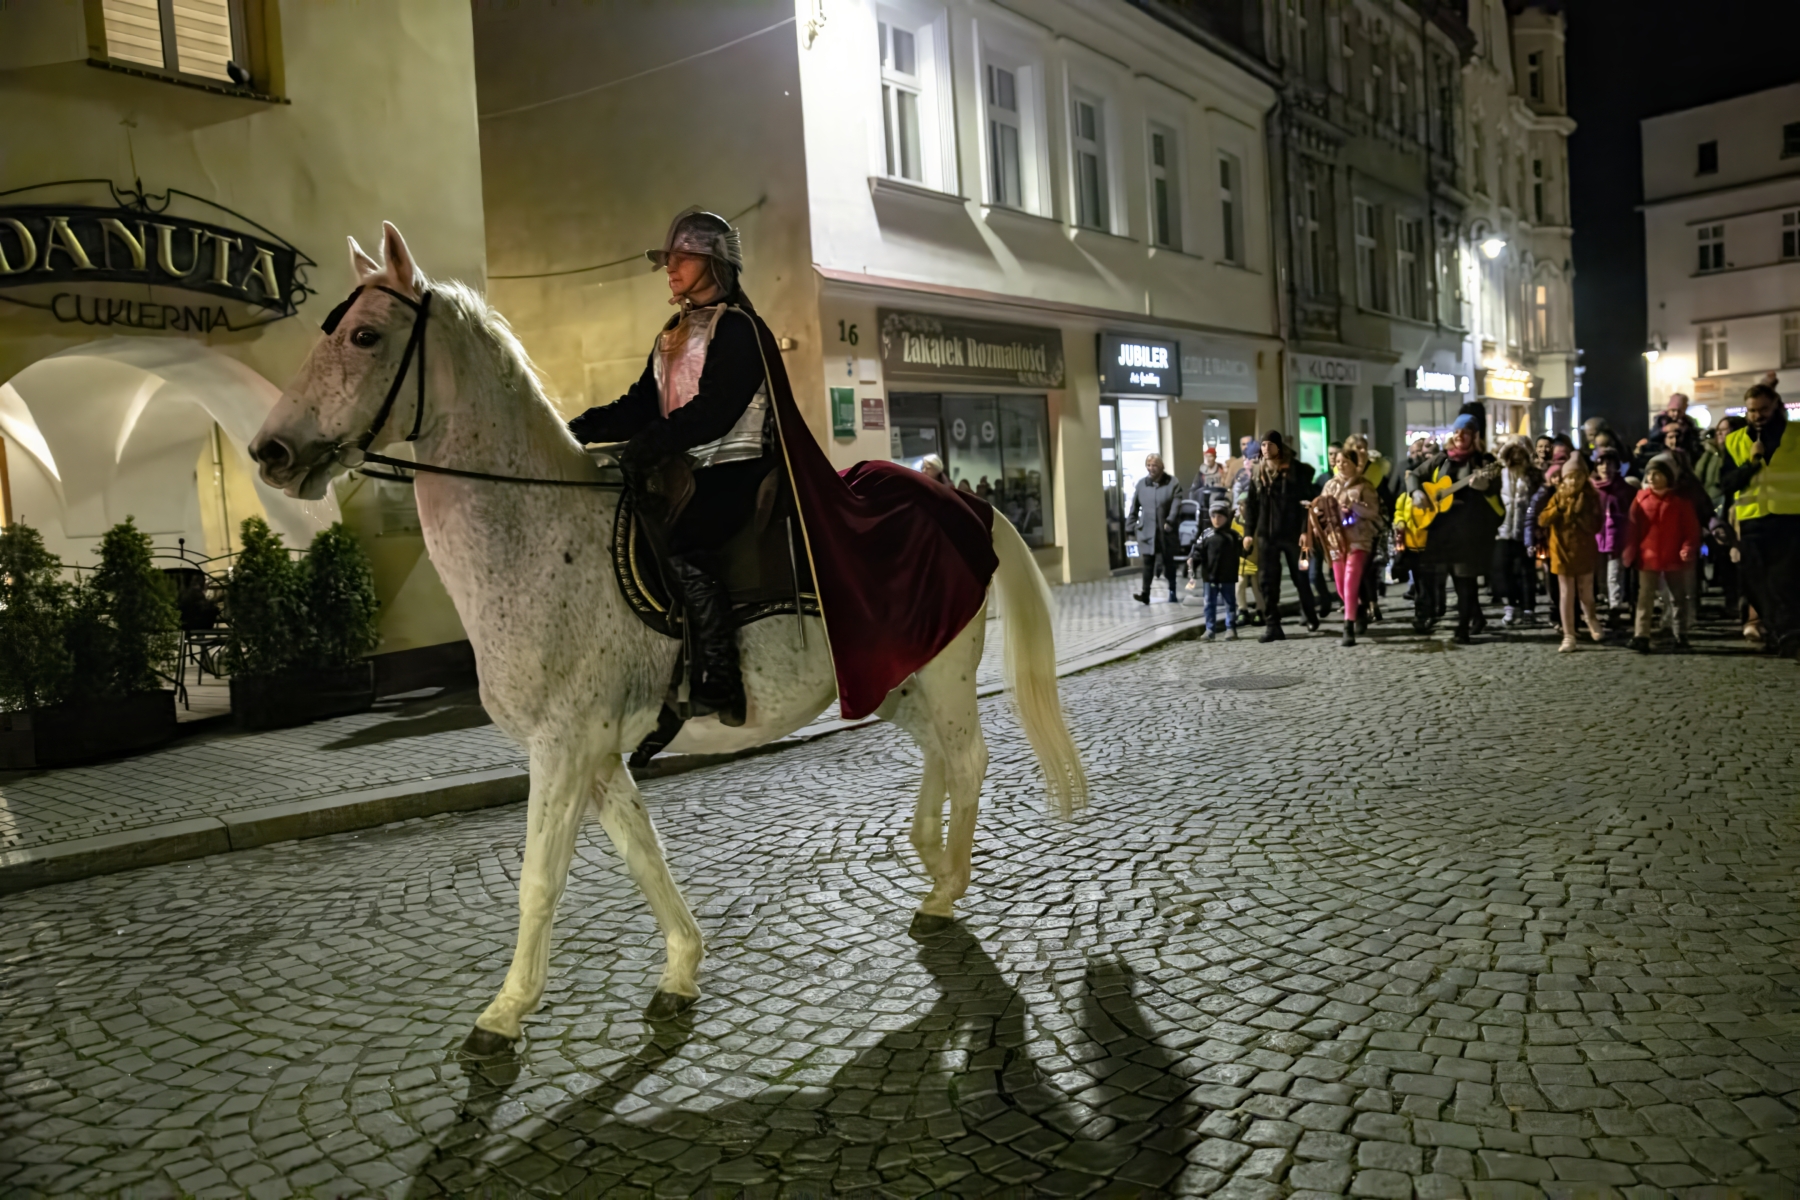 Aktorka przebrana za św. Marcina jedzie na koniu ulicą. Za nią idzie tłum ludzi.